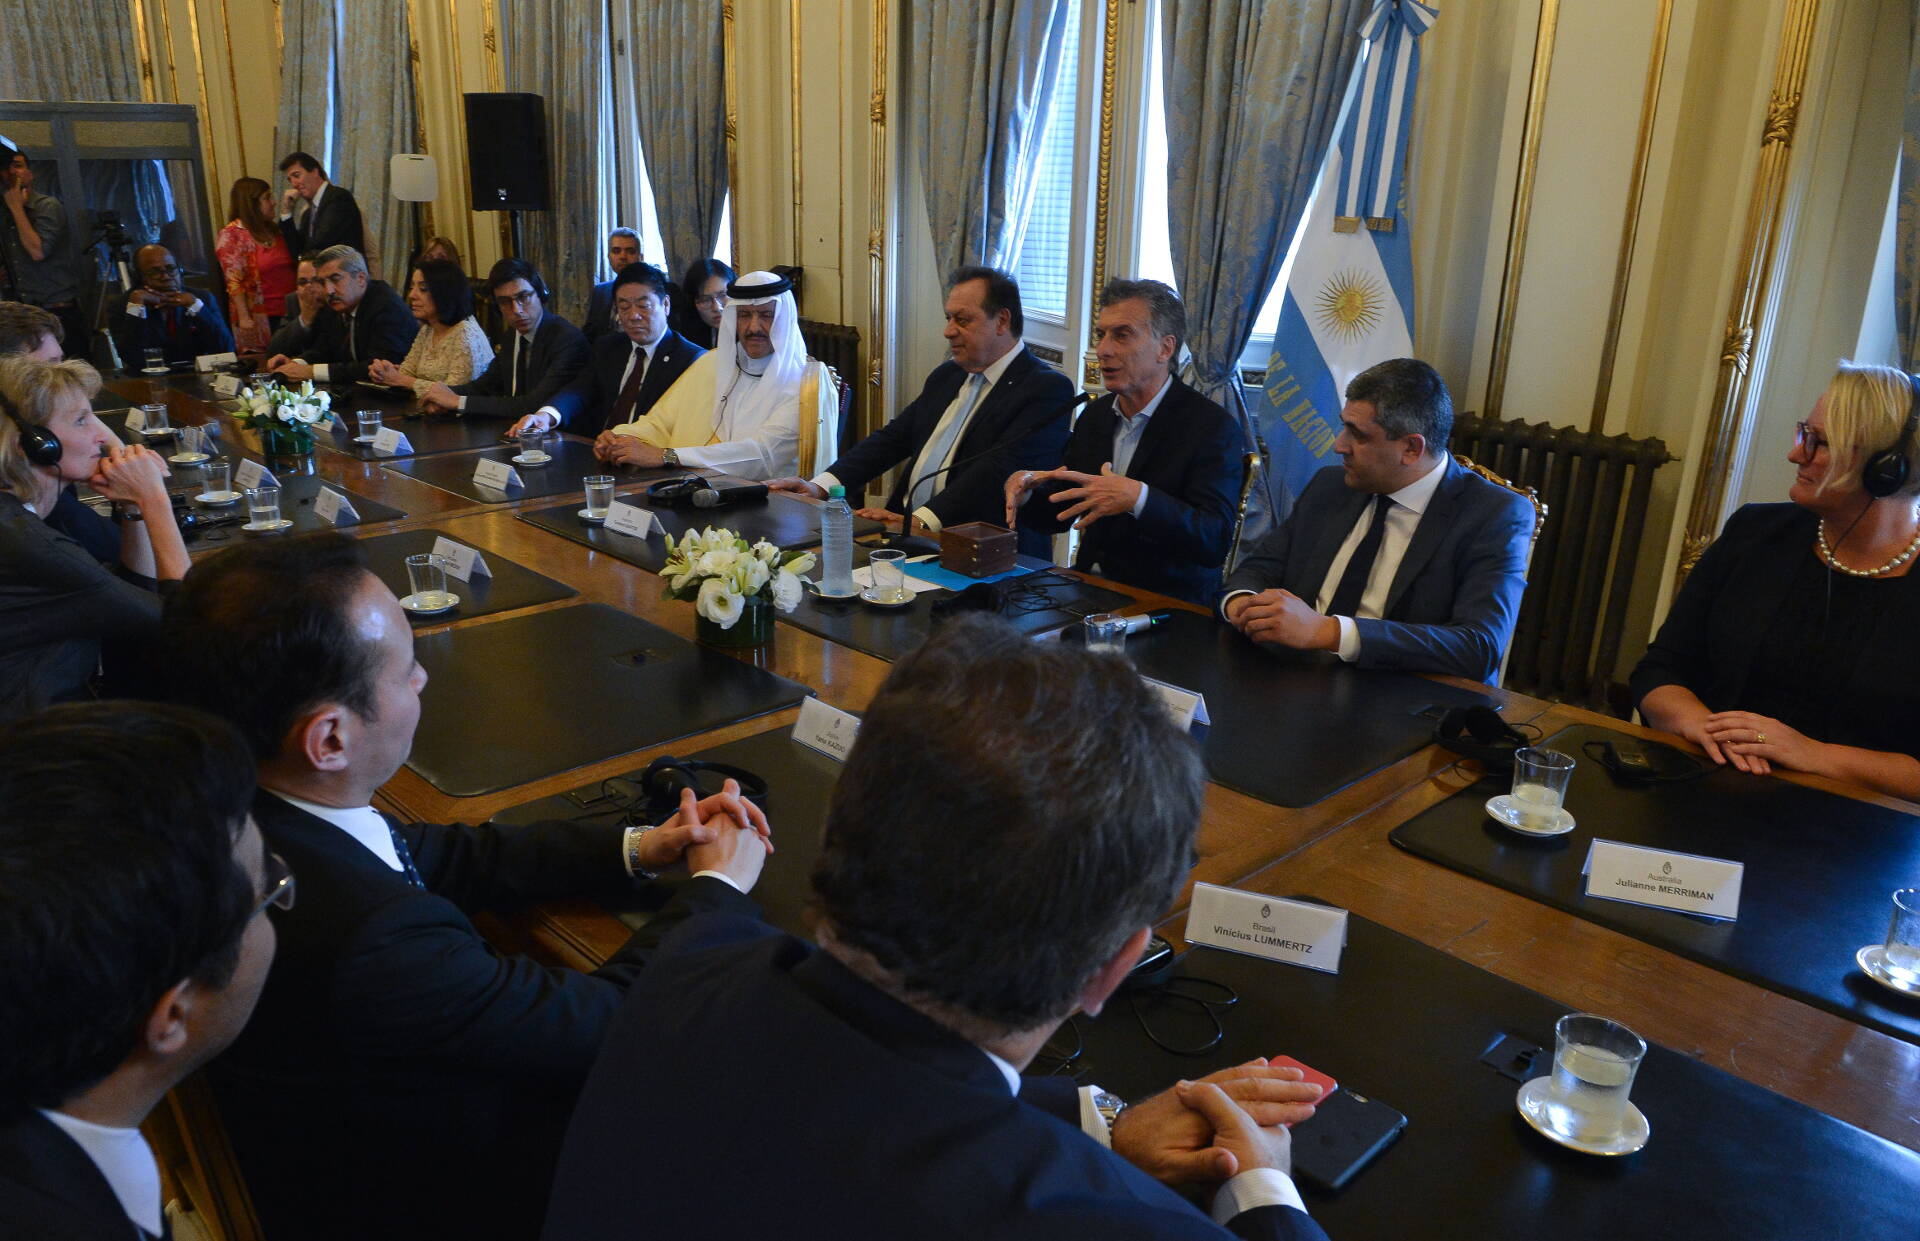 El presidente Macri recibió a los ministros de Turismo de los países del G20